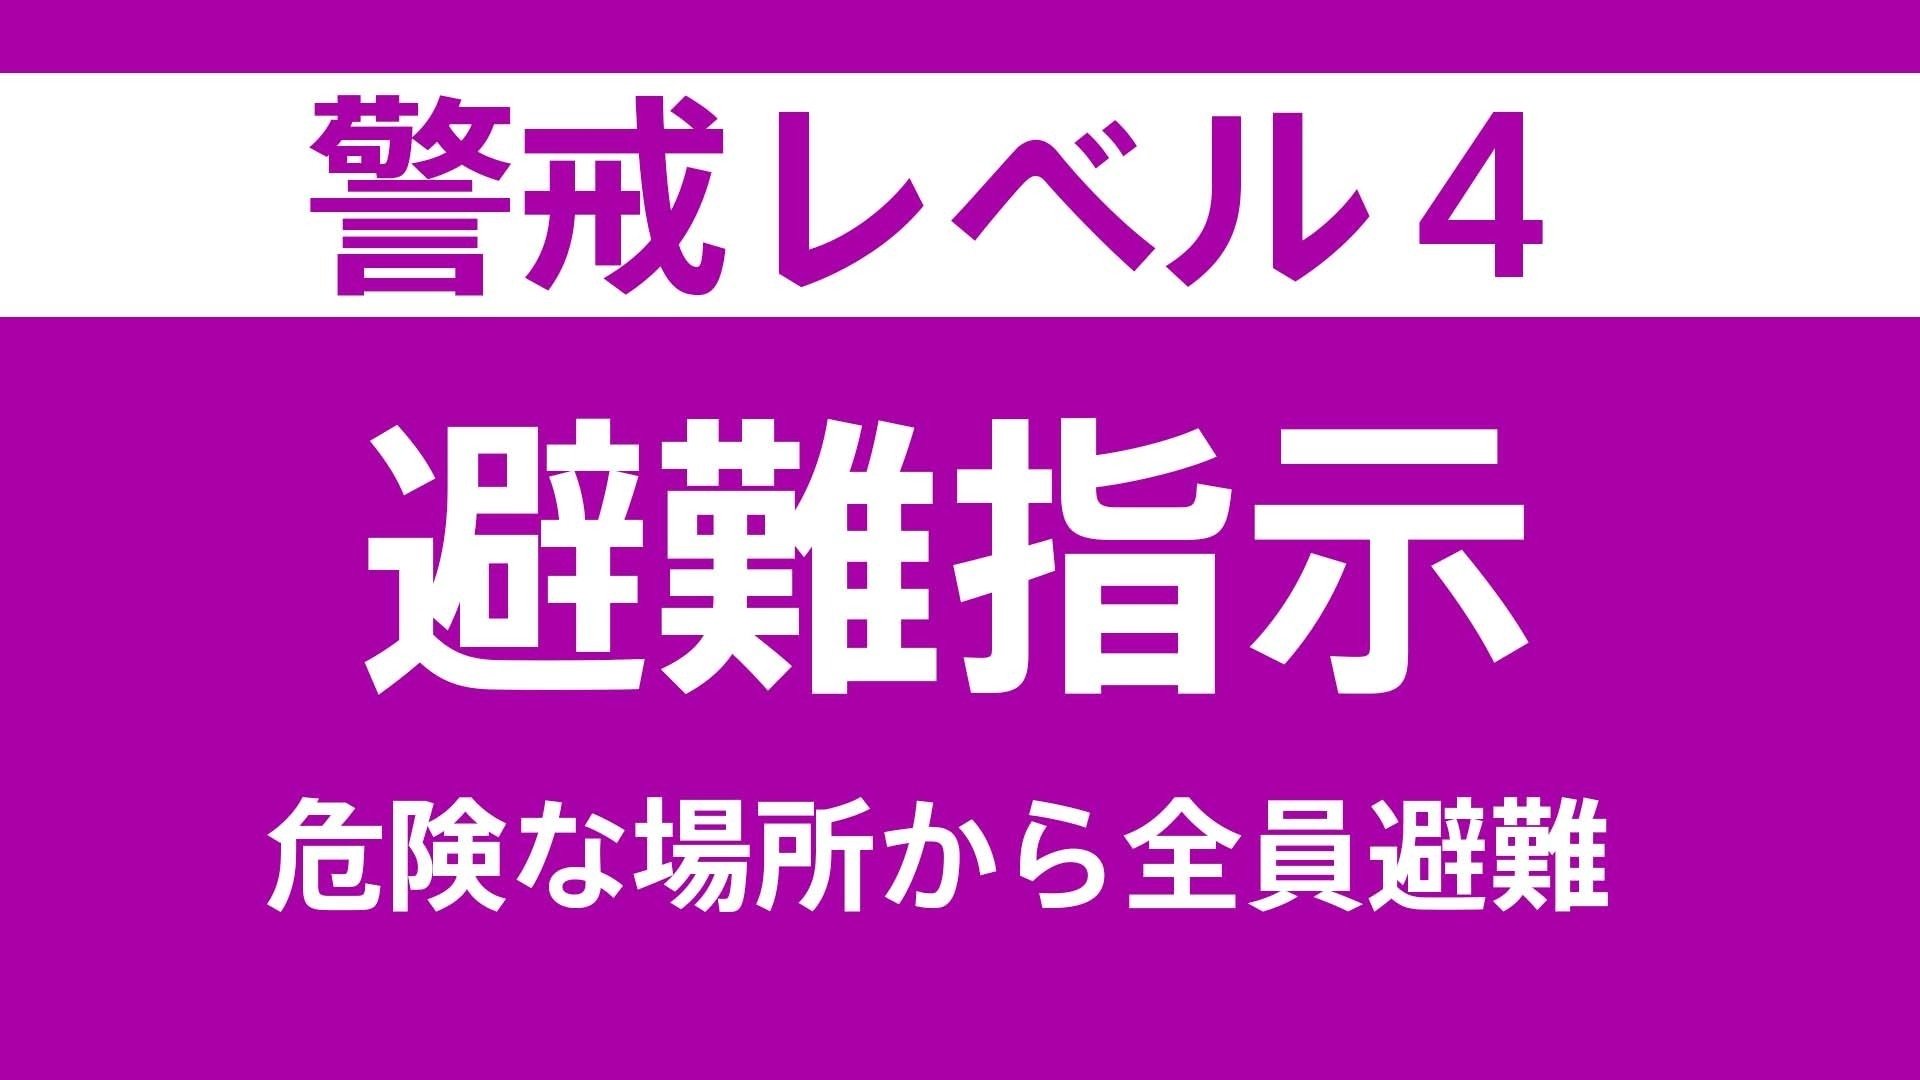 【速報】岐阜・中津川市の神坂地区の一部に避難指示 危険度が上から2番目の「レベル4」の情報